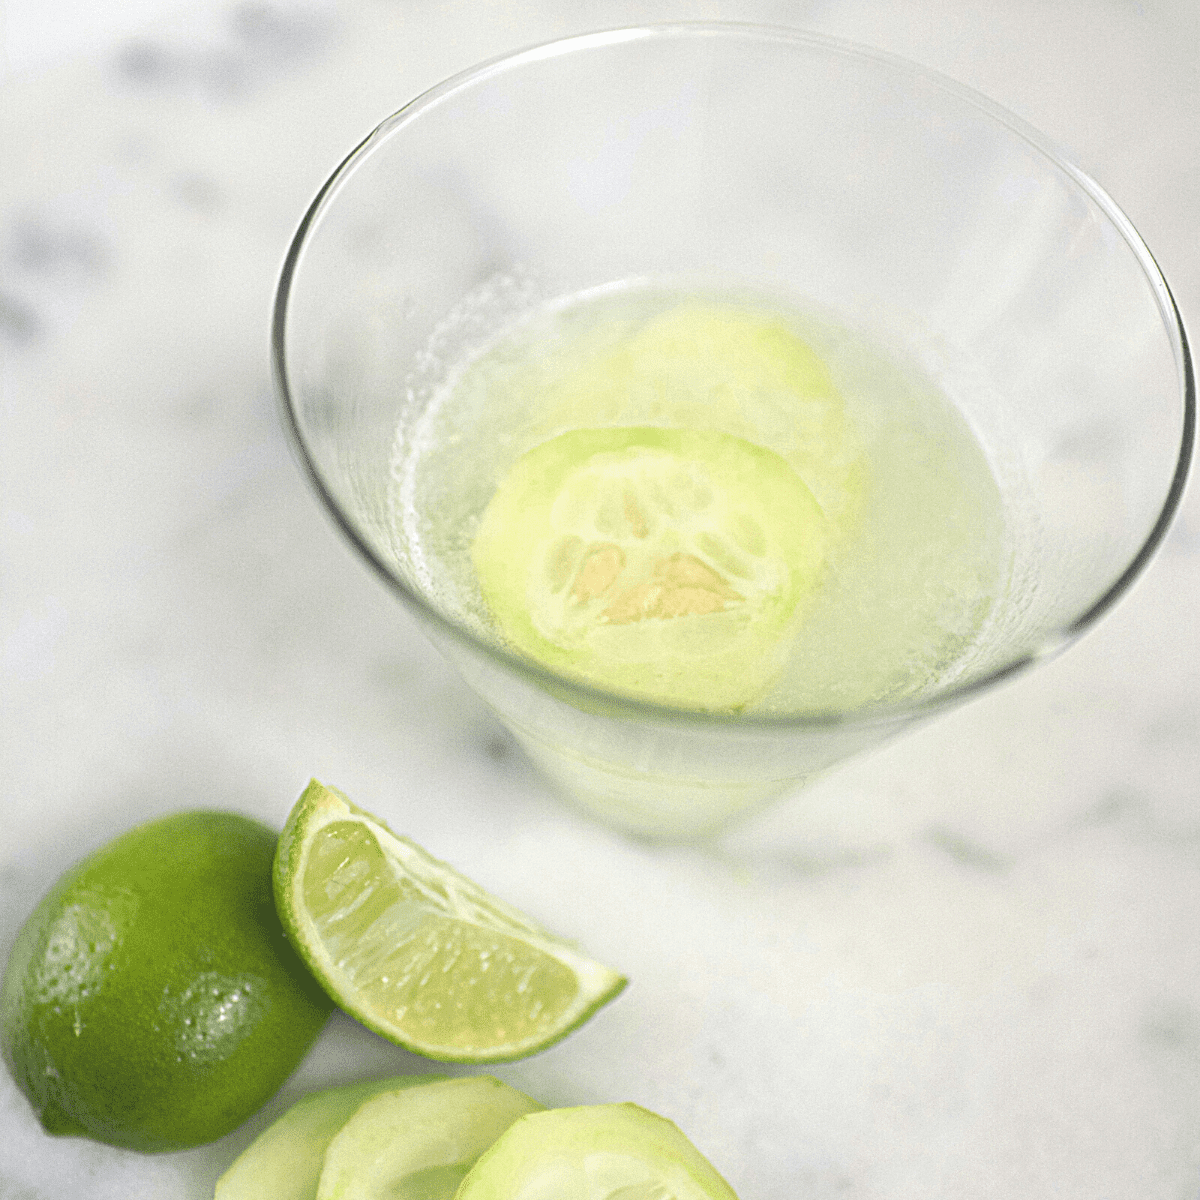 cucumber gimlet recipe vodka